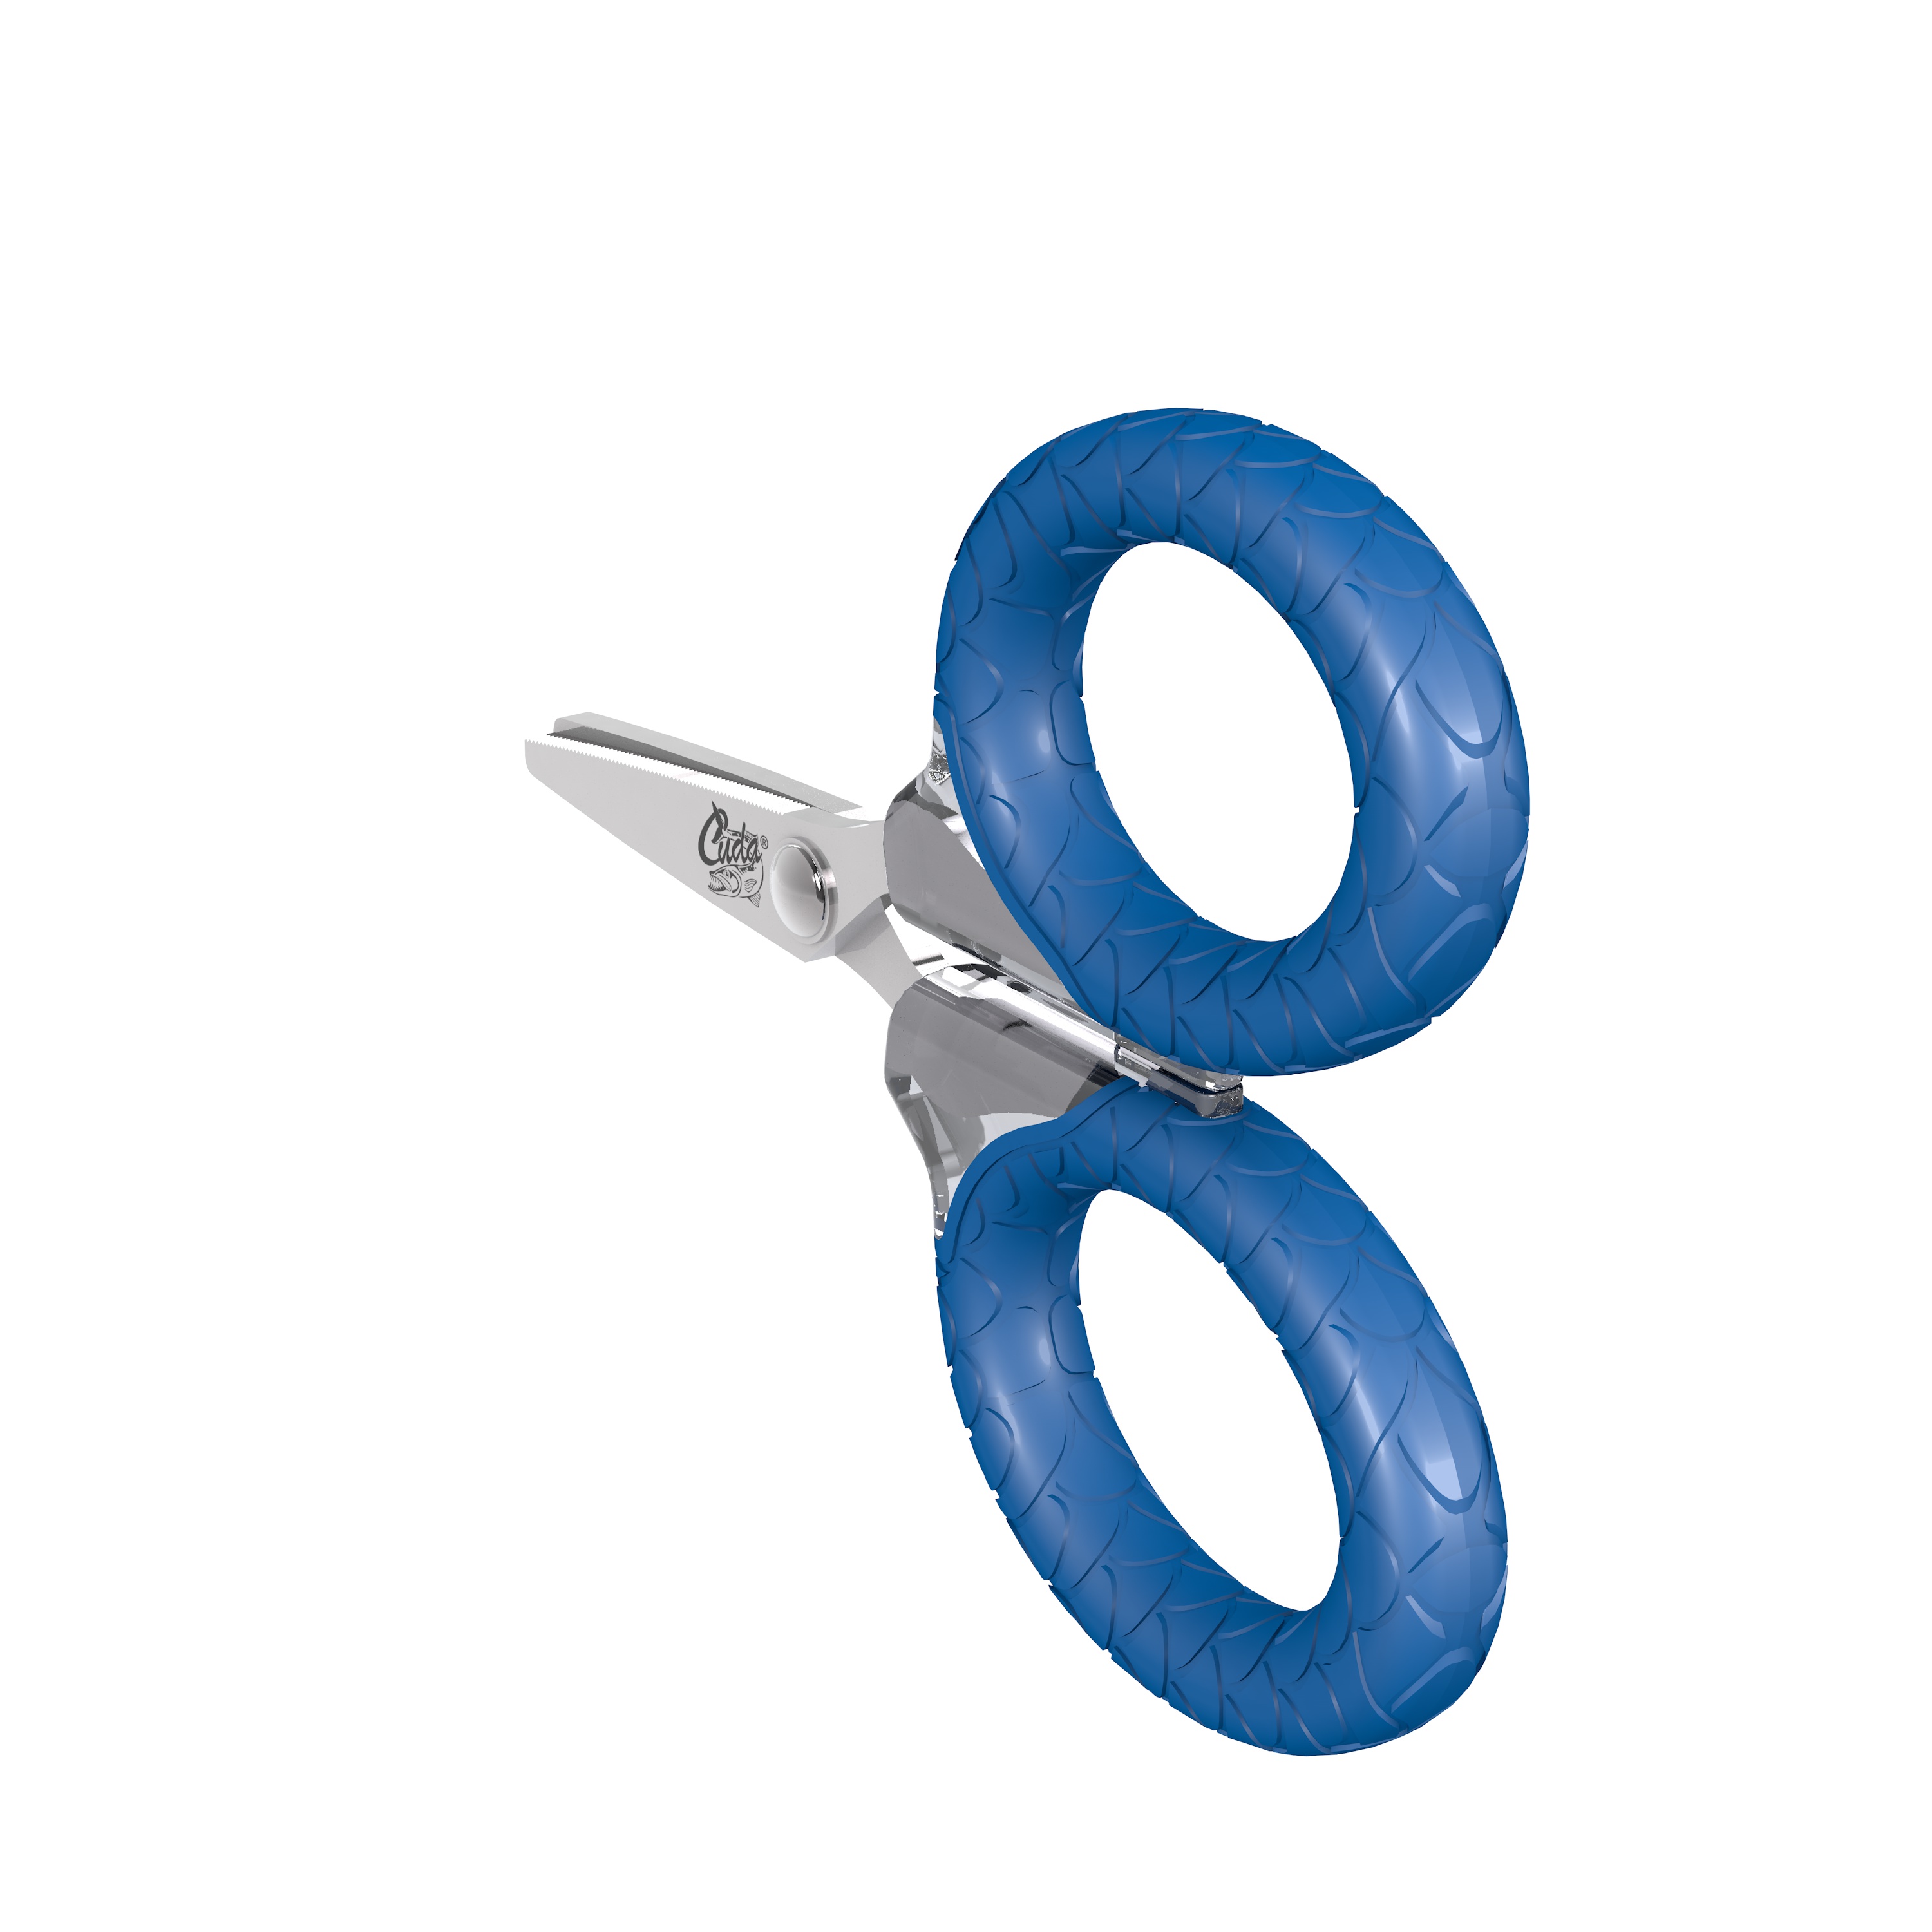 Cuda Micro Scissors, 3, Titanium Bonded Serrated Blades, Blue